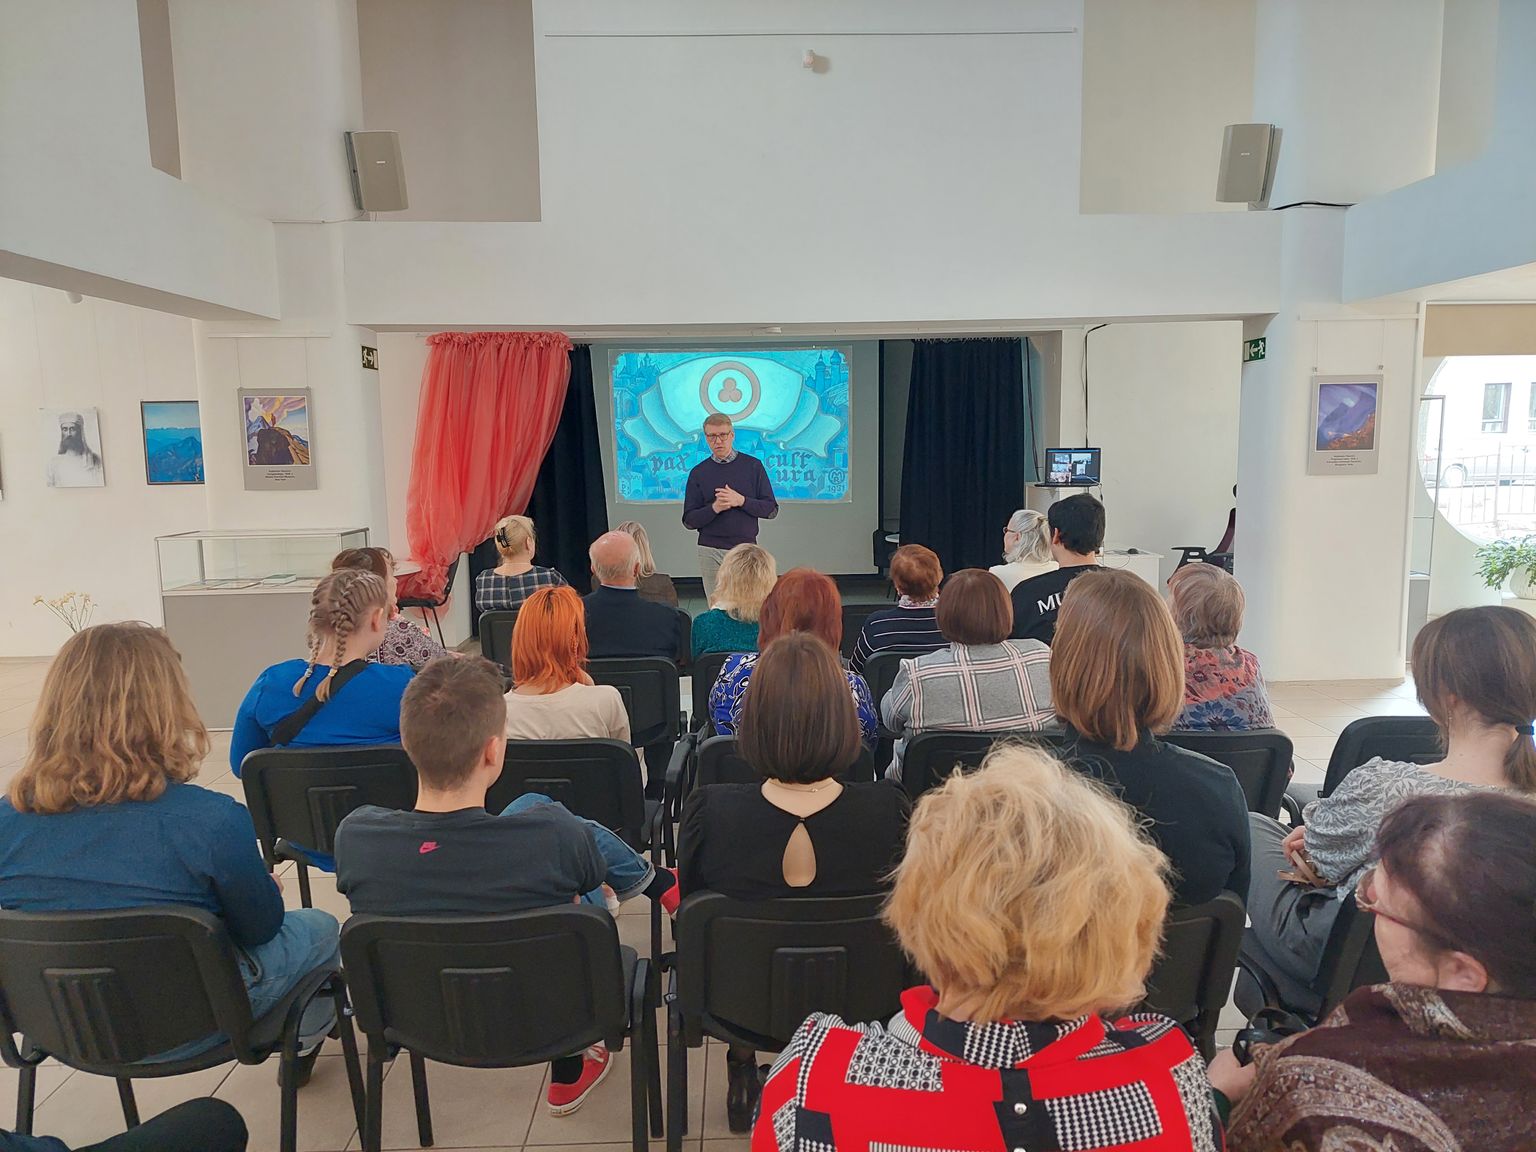 Aprillis oli virtuaalse filiaali programm pühendatud Roerichi loomingule − valges saalis oli avatud tema maalide reproduktsioonide näitus.